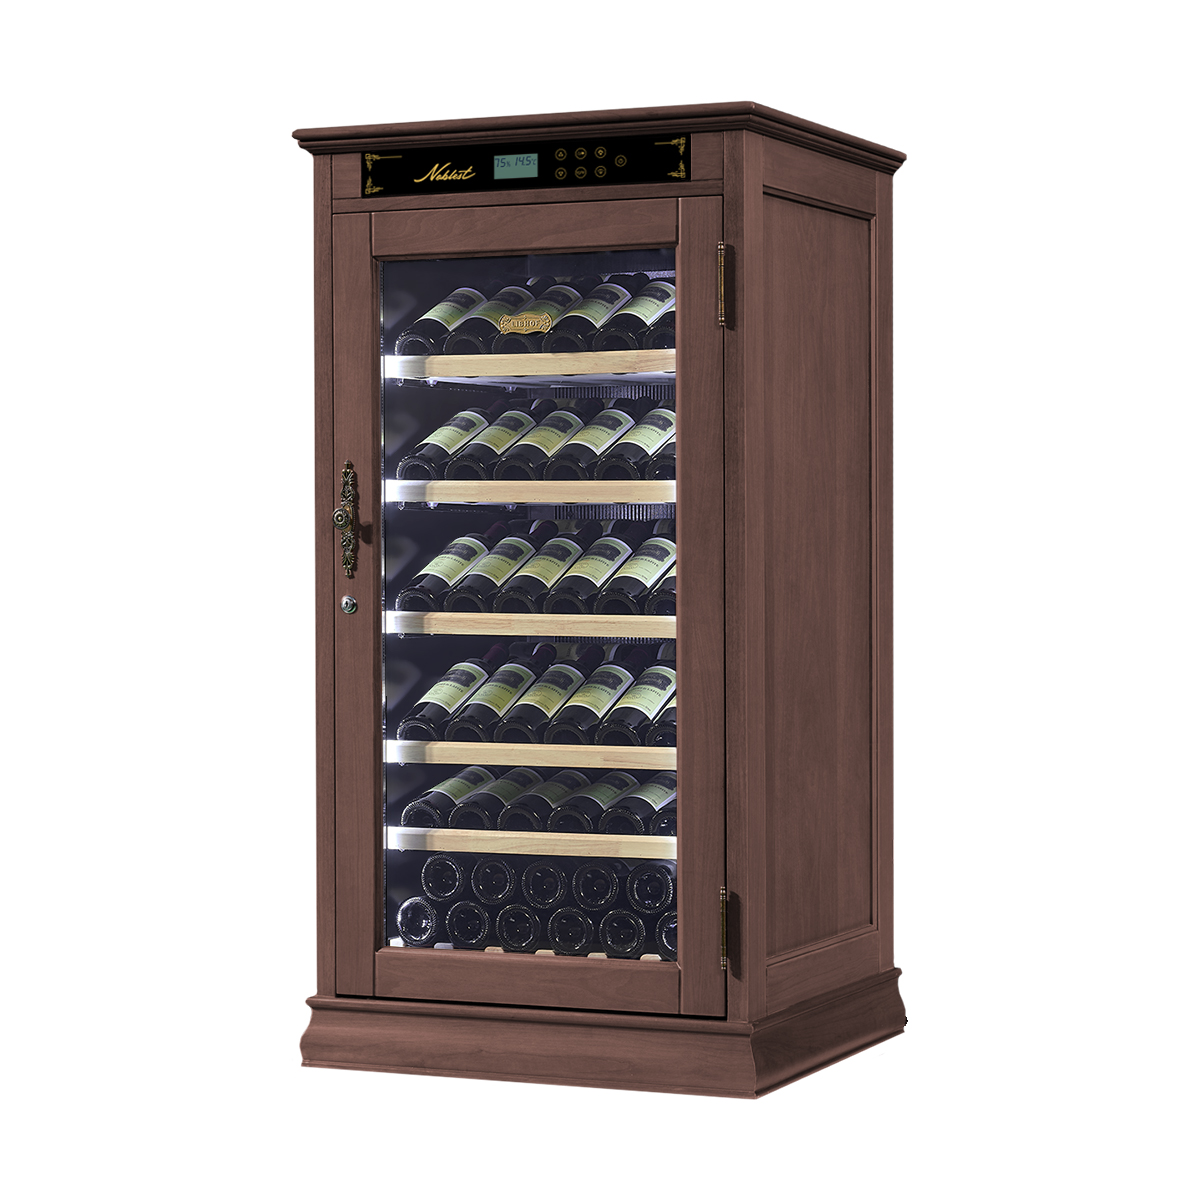 Винный шкаф однозонный отдельностоящий Libhof Noblest NR-69 Walnut 700х650х1330мм на 69 бутылок из американского дуба коричневый с белой подсветкой